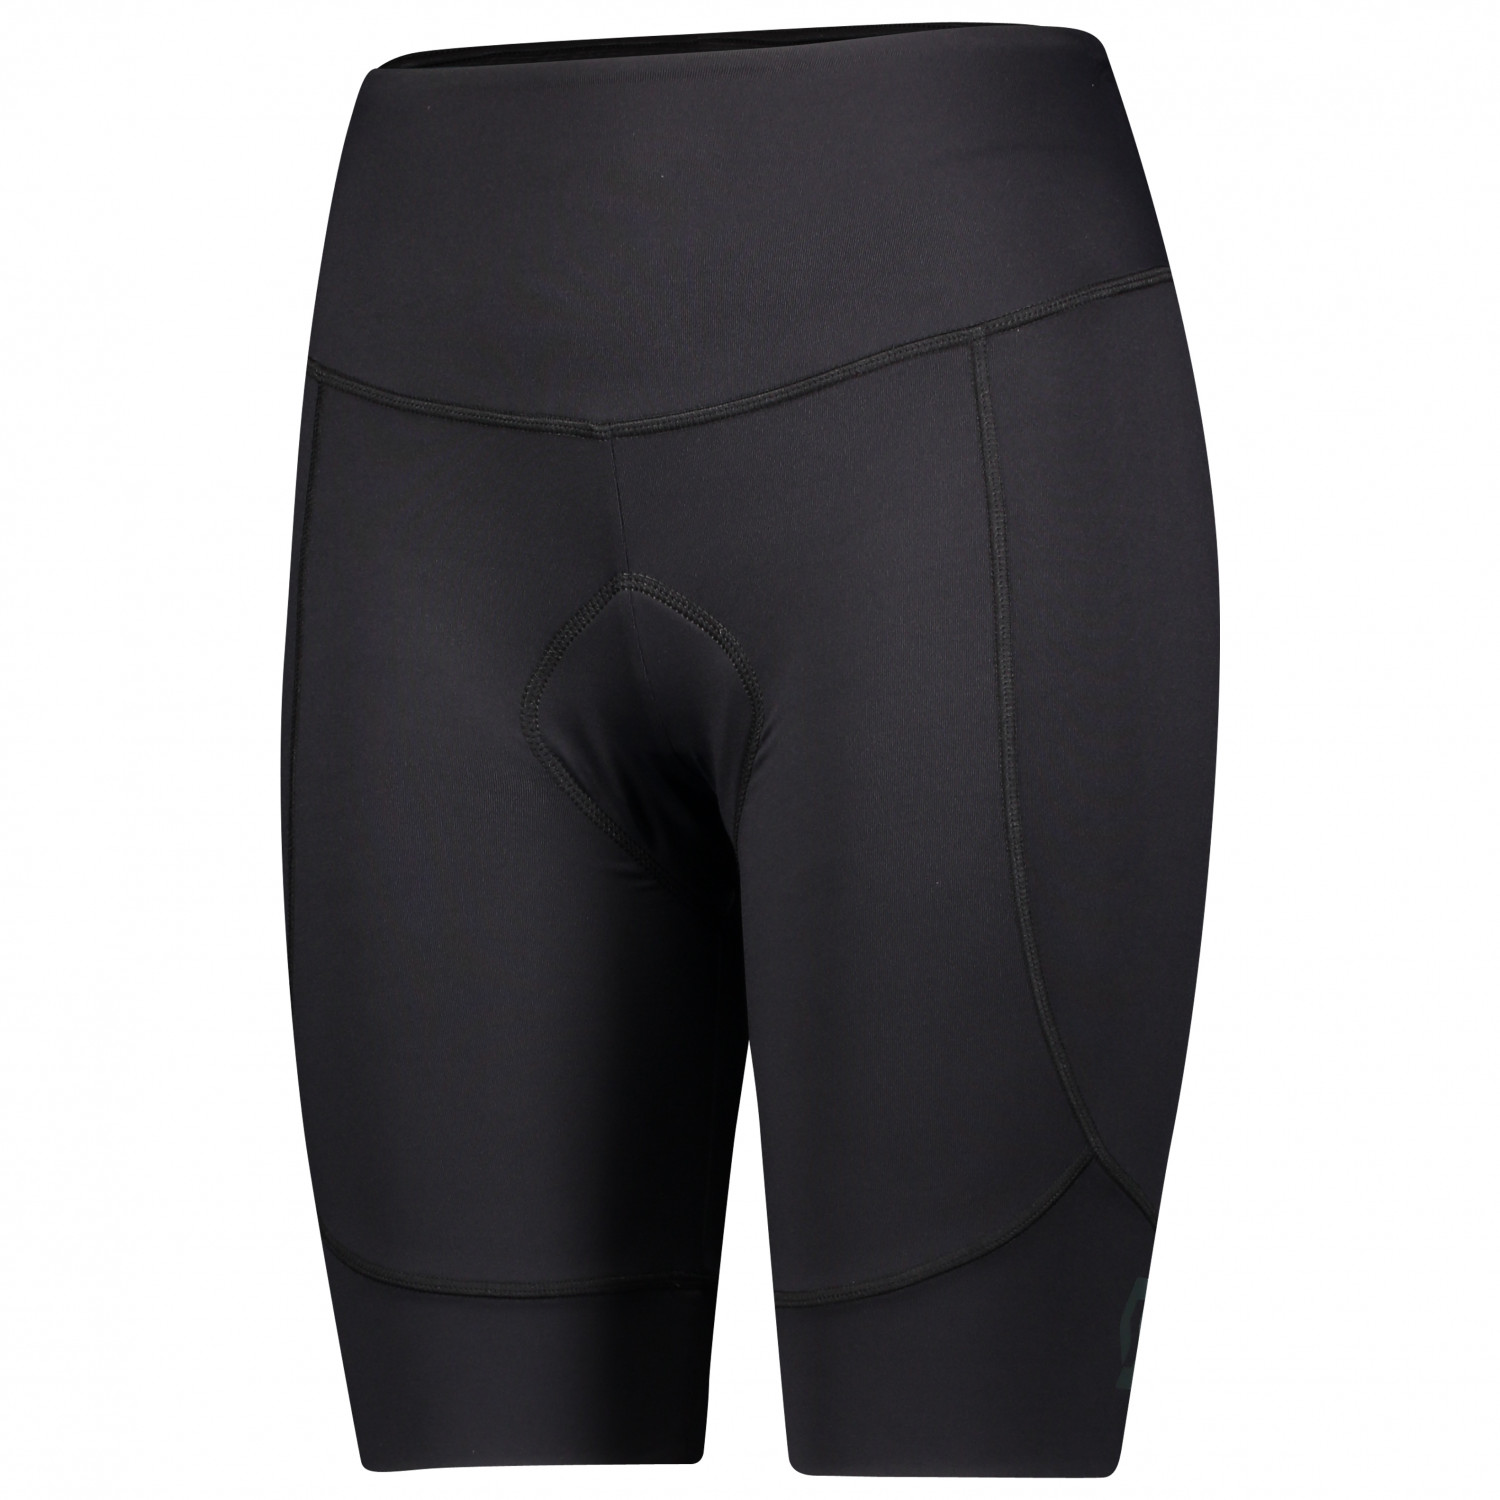 Велосипедные шорты Scott Women's Shorts Endurance 10 +++, цвет Black/Dark Grey спортивные шорты endurance цвет black